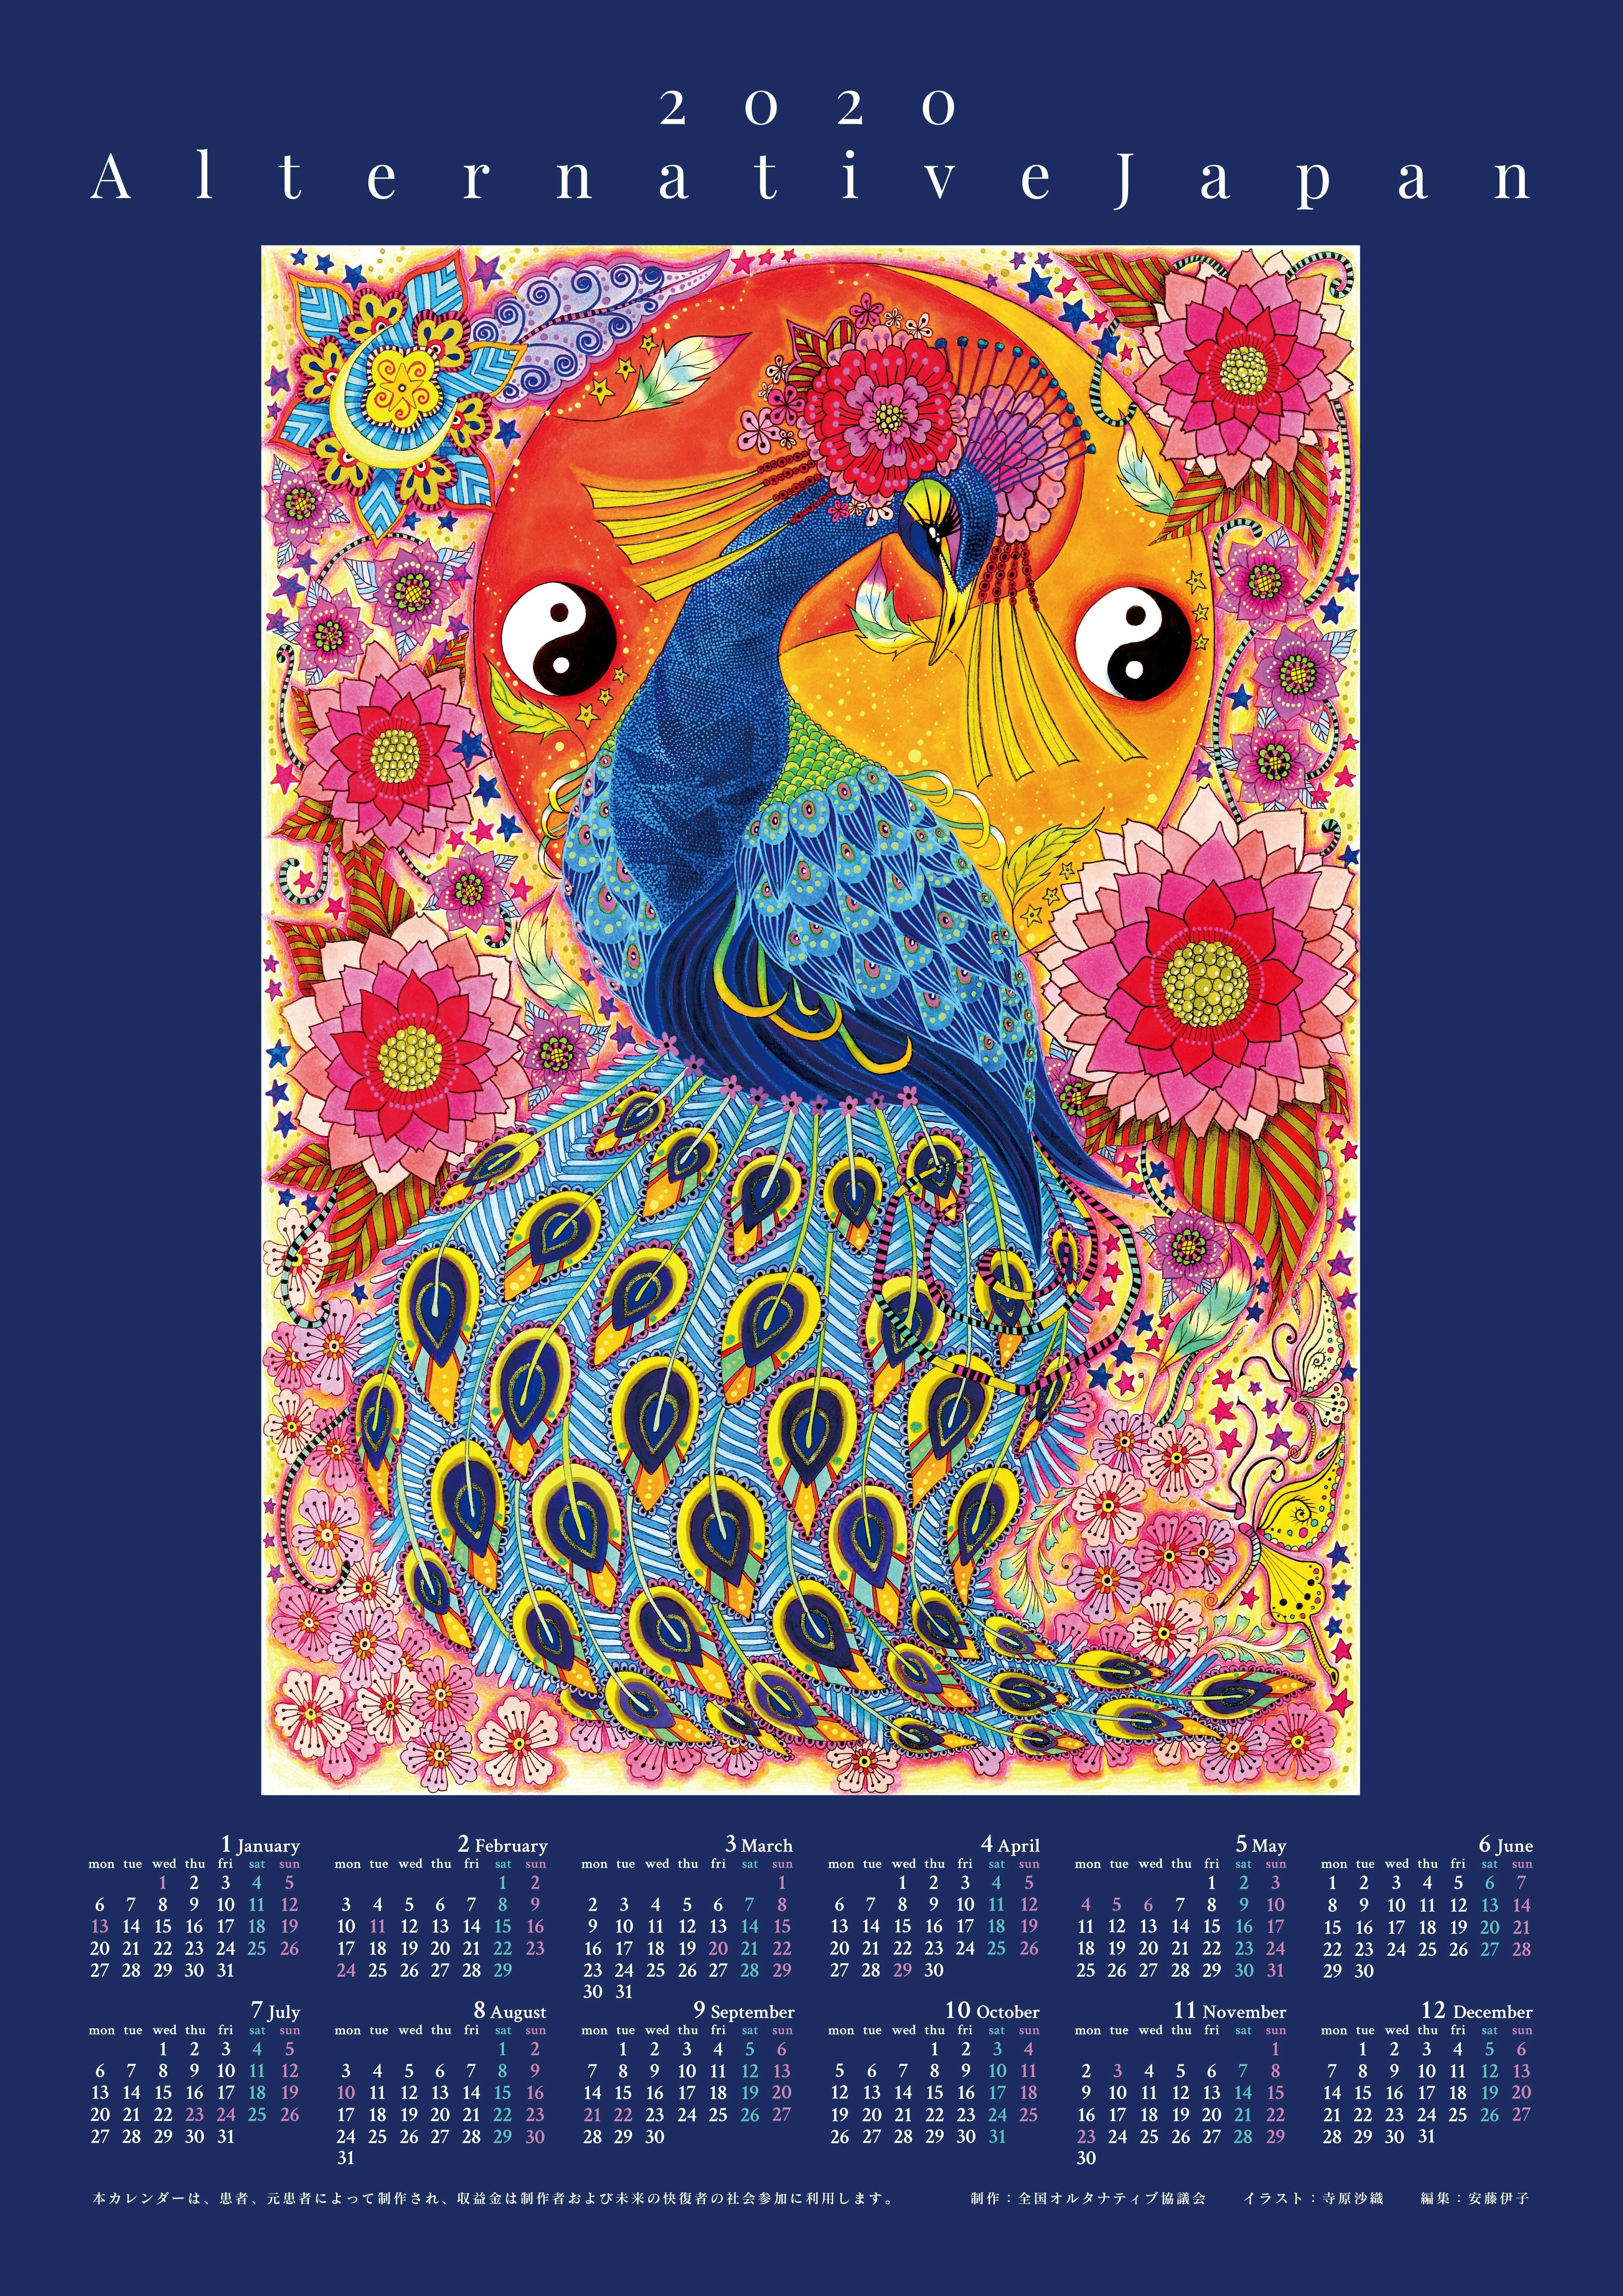 寺原沙織さんのイラスト 孔雀の舞 リニューアル21年版カレンダーの発表 Campfire キャンプファイヤー